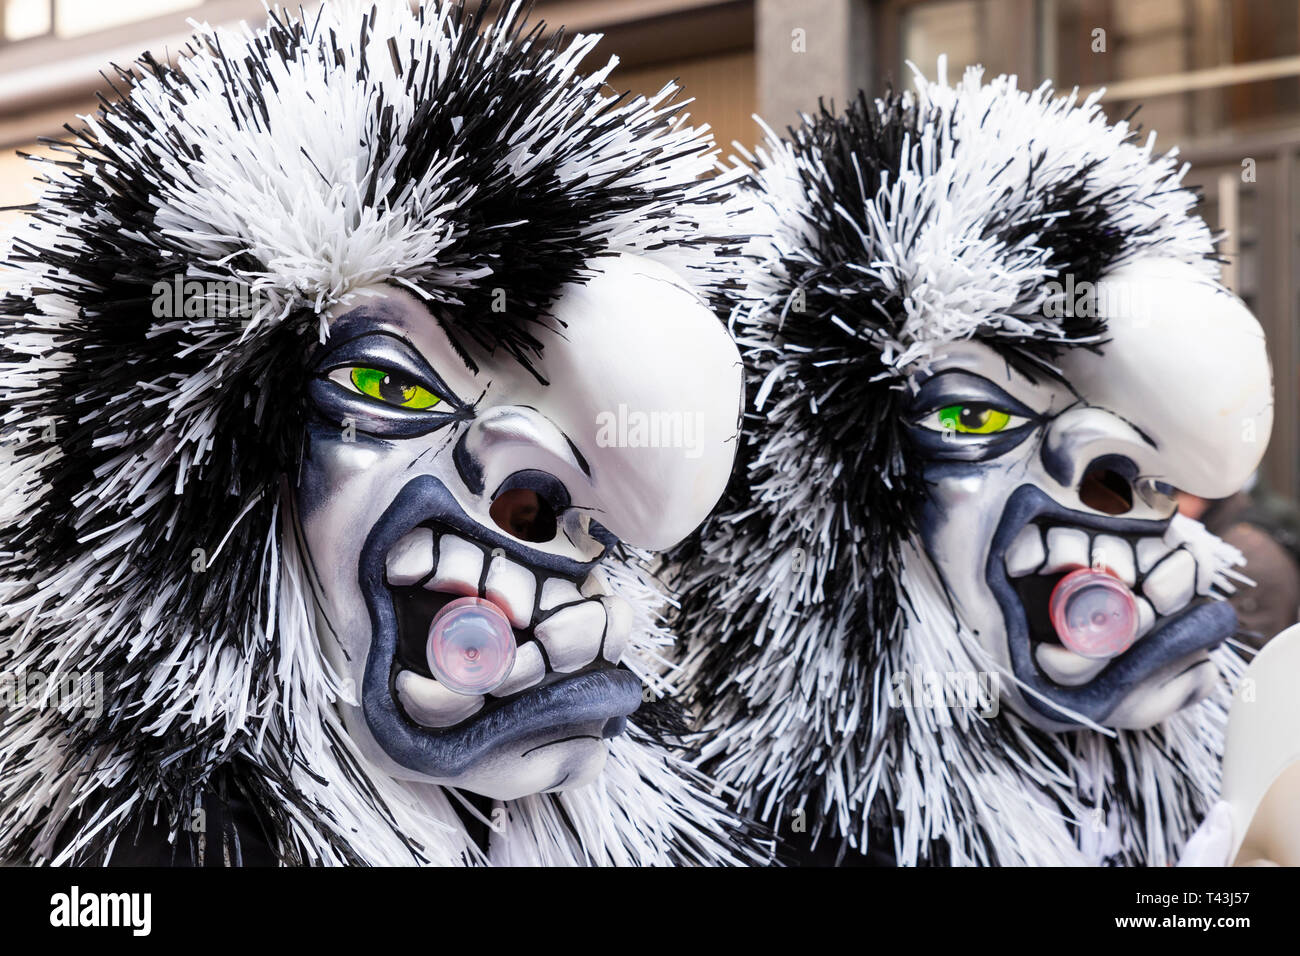 Freie Strasse, Bâle, Suisse - Mars 12th, 2019. Close-up de deux magnifiques masques carnaval noir et blanc Banque D'Images